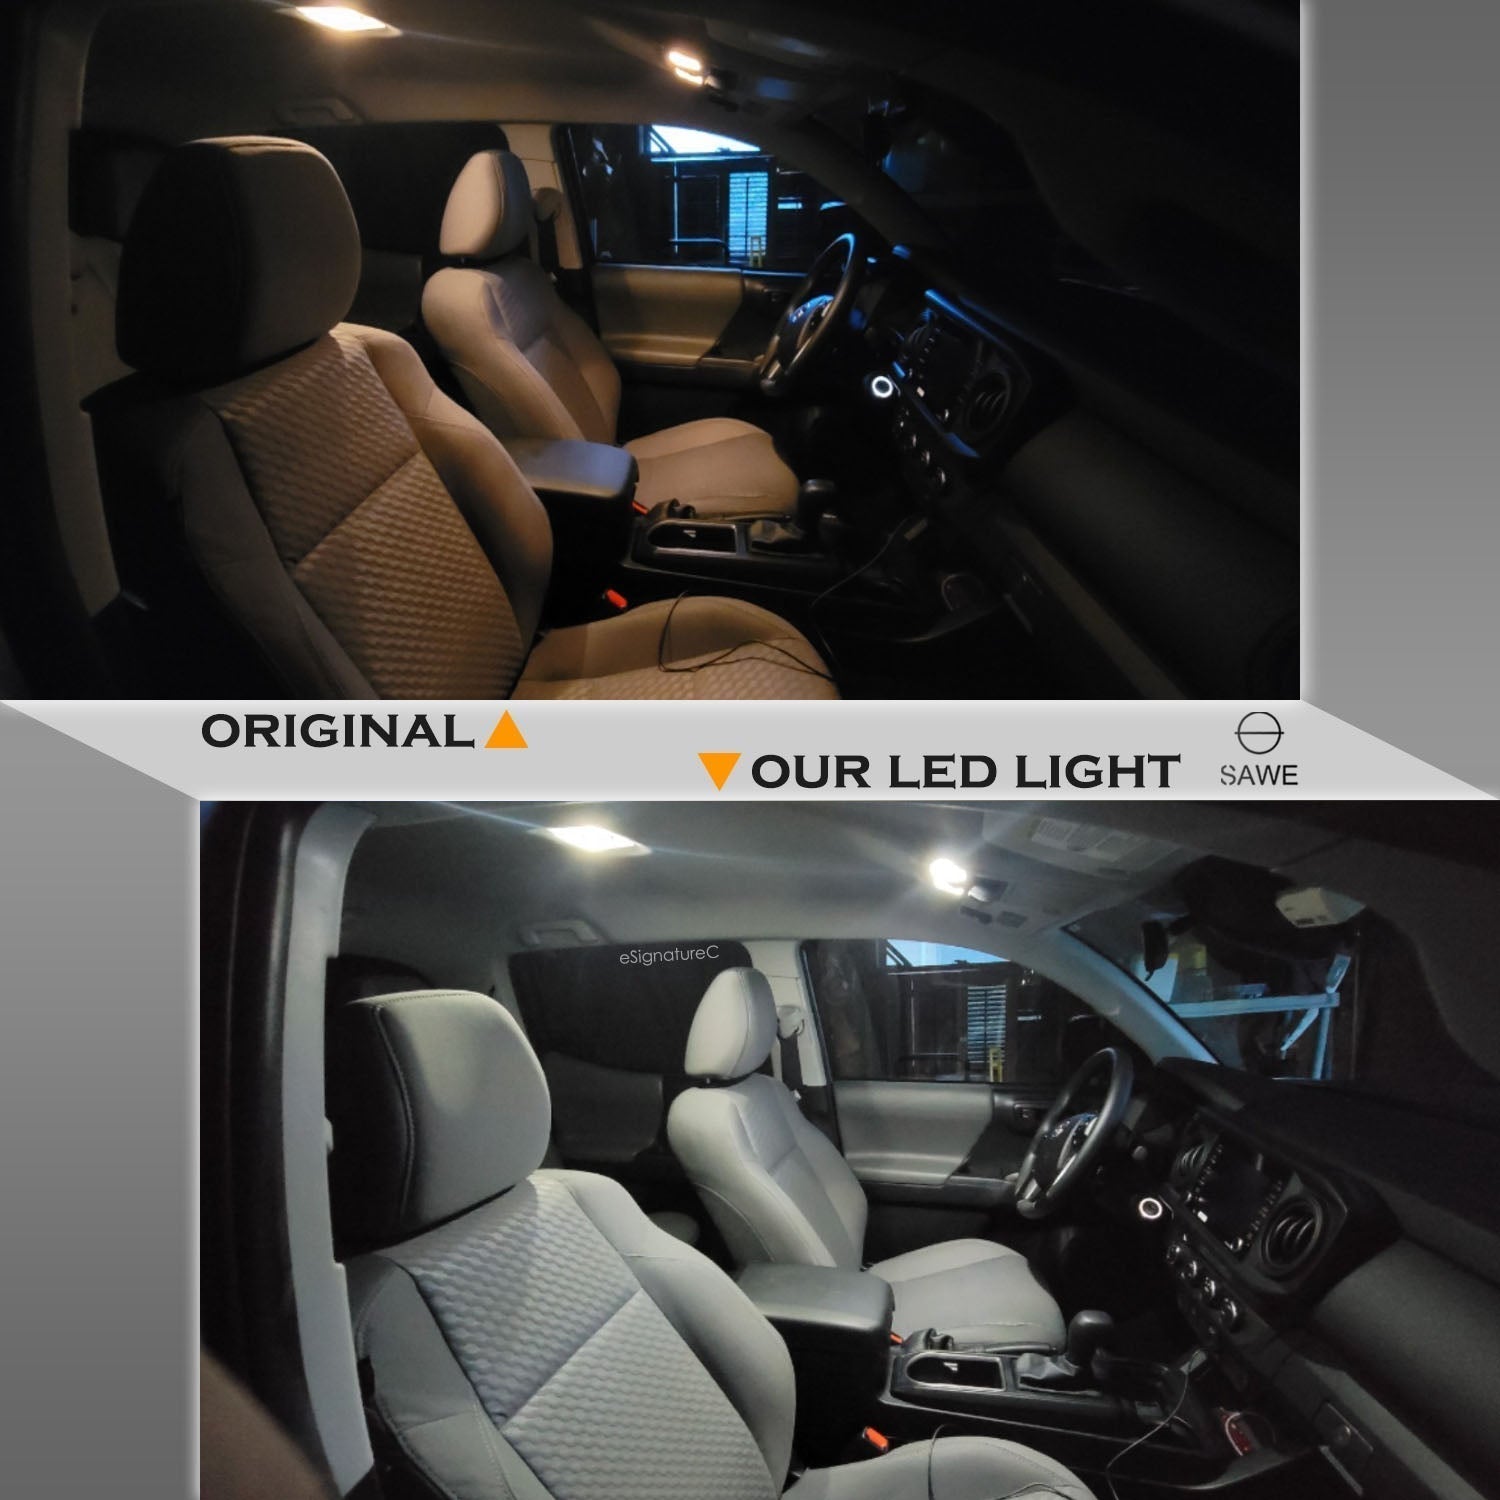 For Mercedes Benz E350 E550 E63 Interior LED Lights - Dome & Map Light Bulb Package Kit for 2010 - 2013 - White